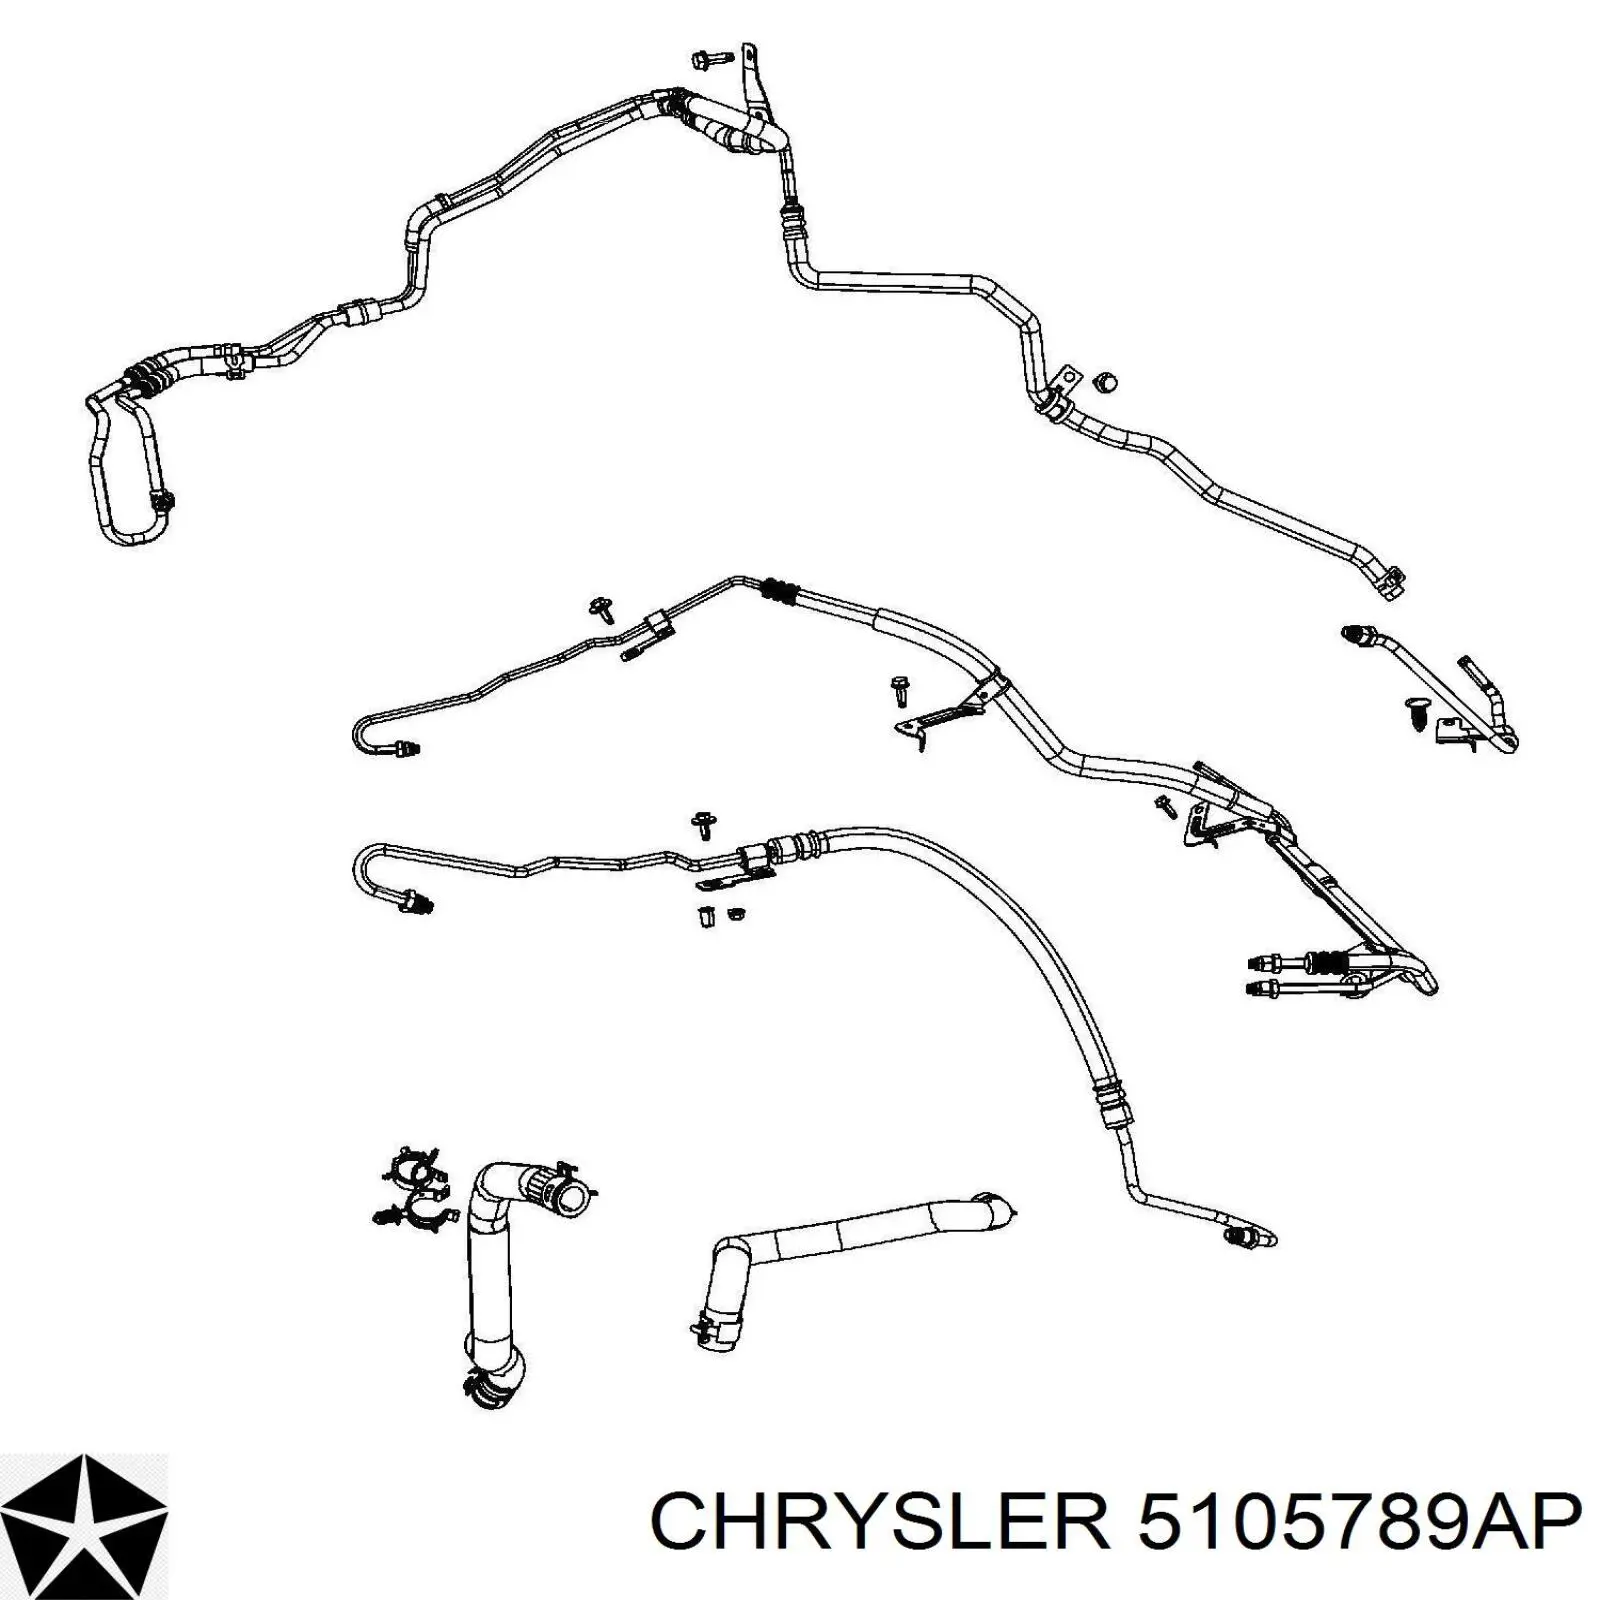 5105789AP Chrysler шланг гур низкого давления, от рейки (механизма к радиатору)